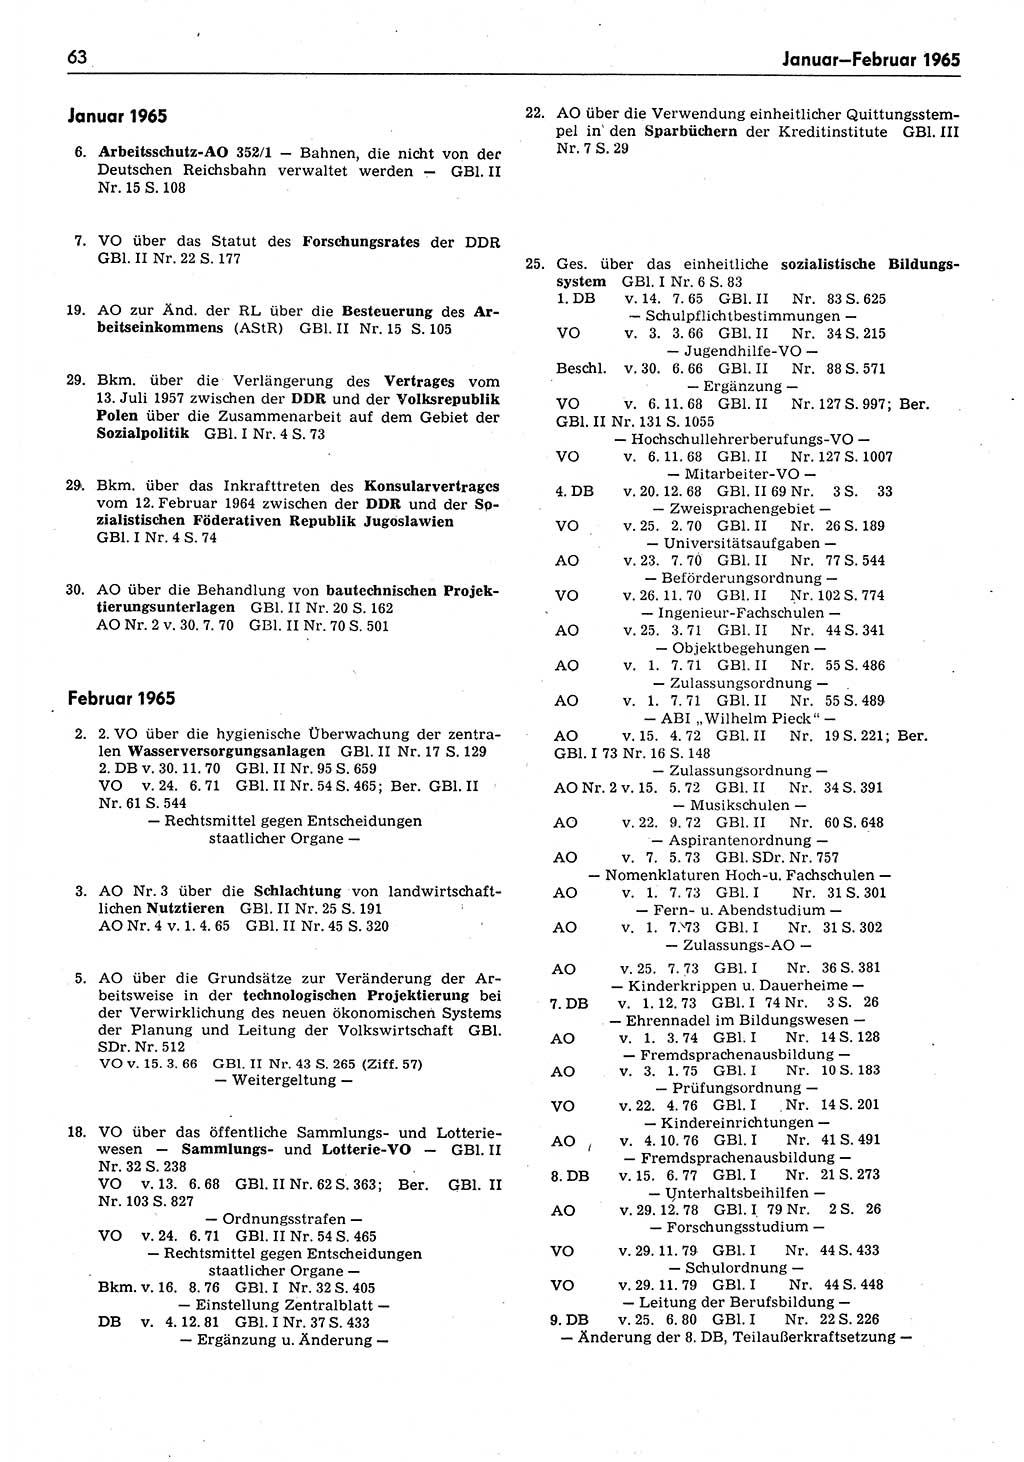 Das geltende Recht der Deutschen Demokratischen Republik (DDR) 1949-1988, Seite 63 (Gelt. R. DDR 1949-1988, S. 63)